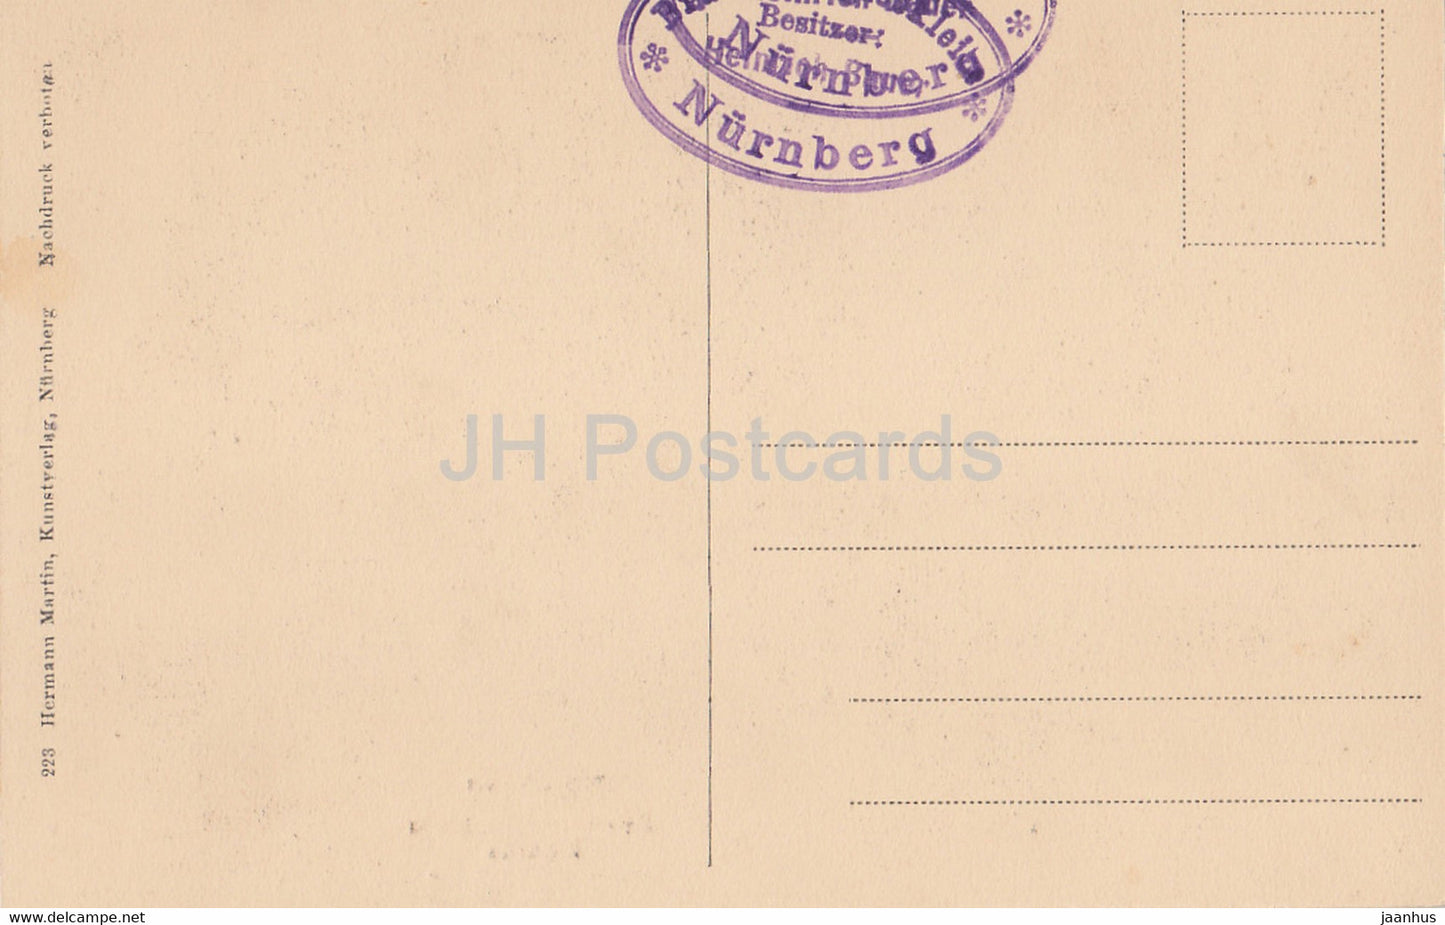 Nurnberg - Hans Sachs Haus - Schusterstube des Meistersingers Hans Sachs - 1 - old postcard - Germany - unused